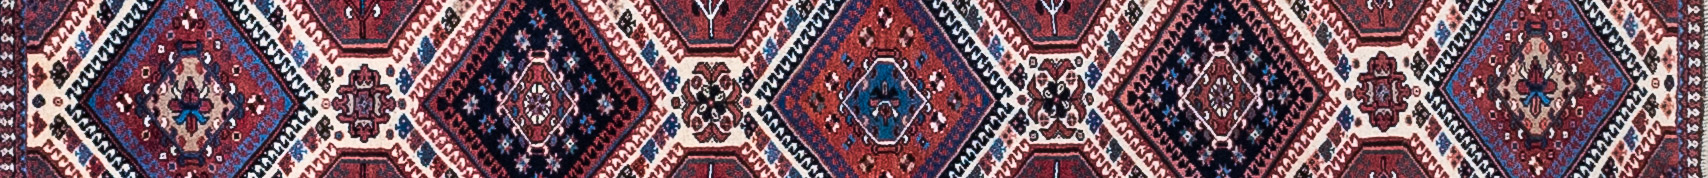 Yalameh Persian Carpet Rug N1Carpet Canada Montreal Tapis Persan 780